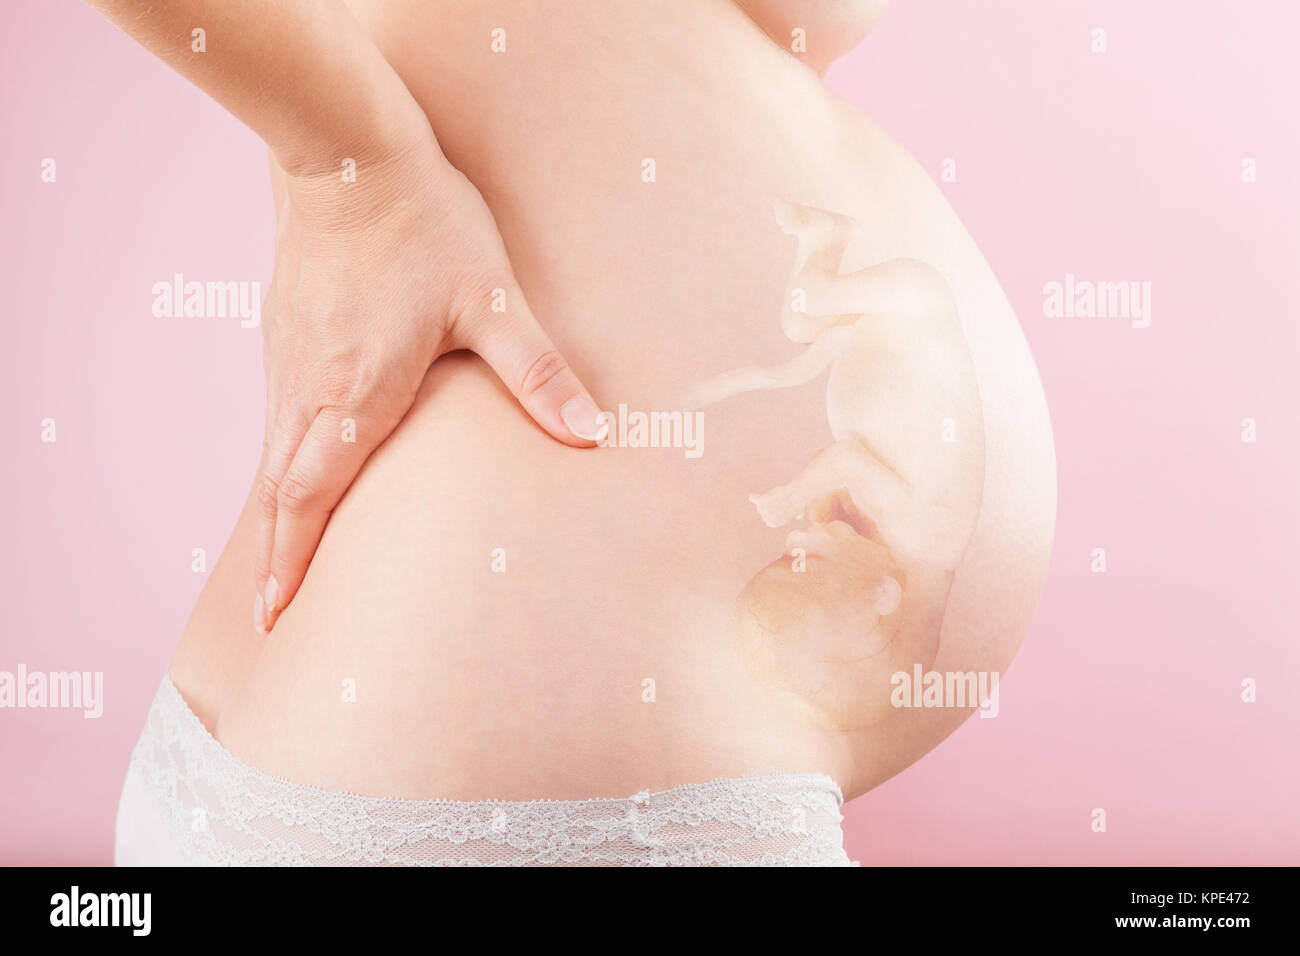 Dicker schwanger bauch oder warum sehe